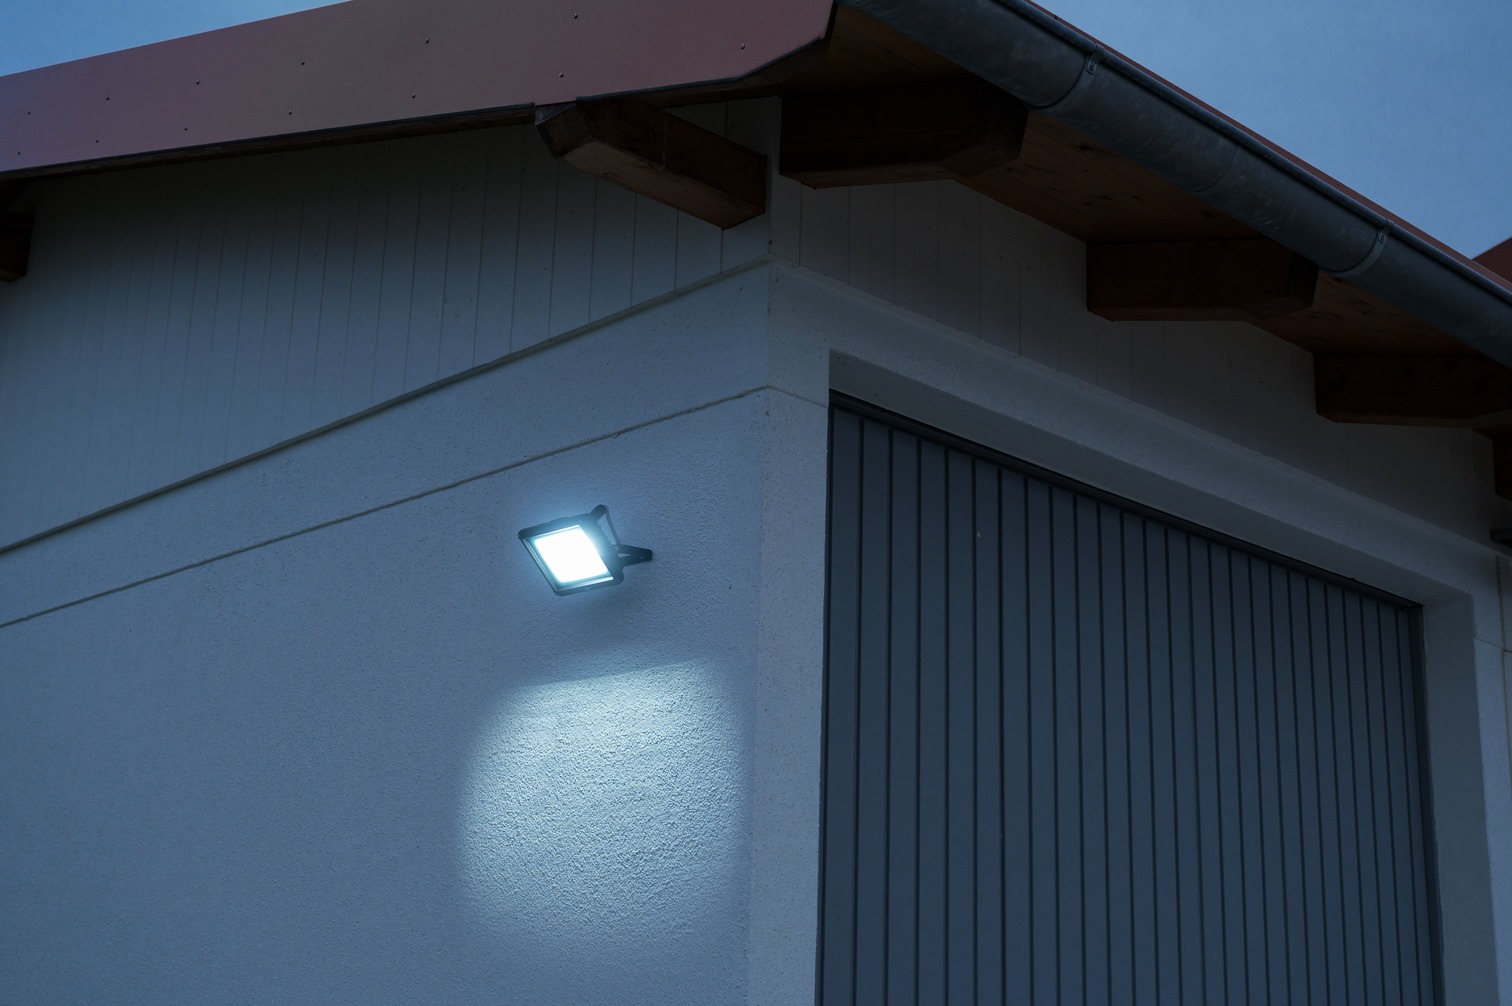 Brennenstuhl LED Wandstrahler »JARO 7060«, 50 W, für außen